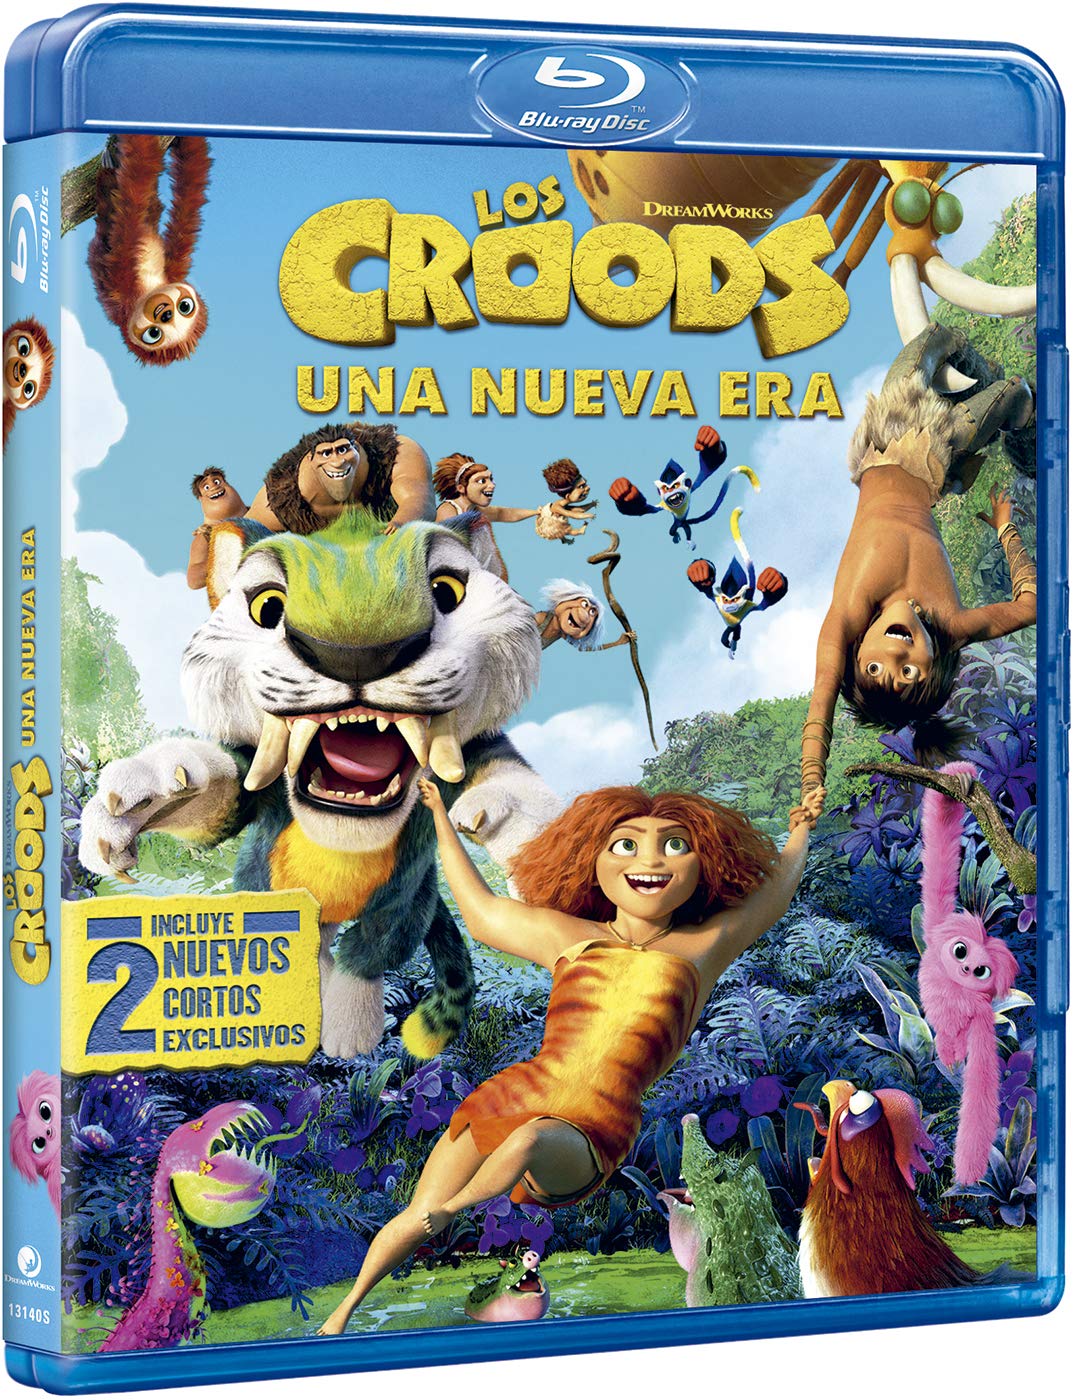 Los Croods 2: Una nueva era [Blu-ray]